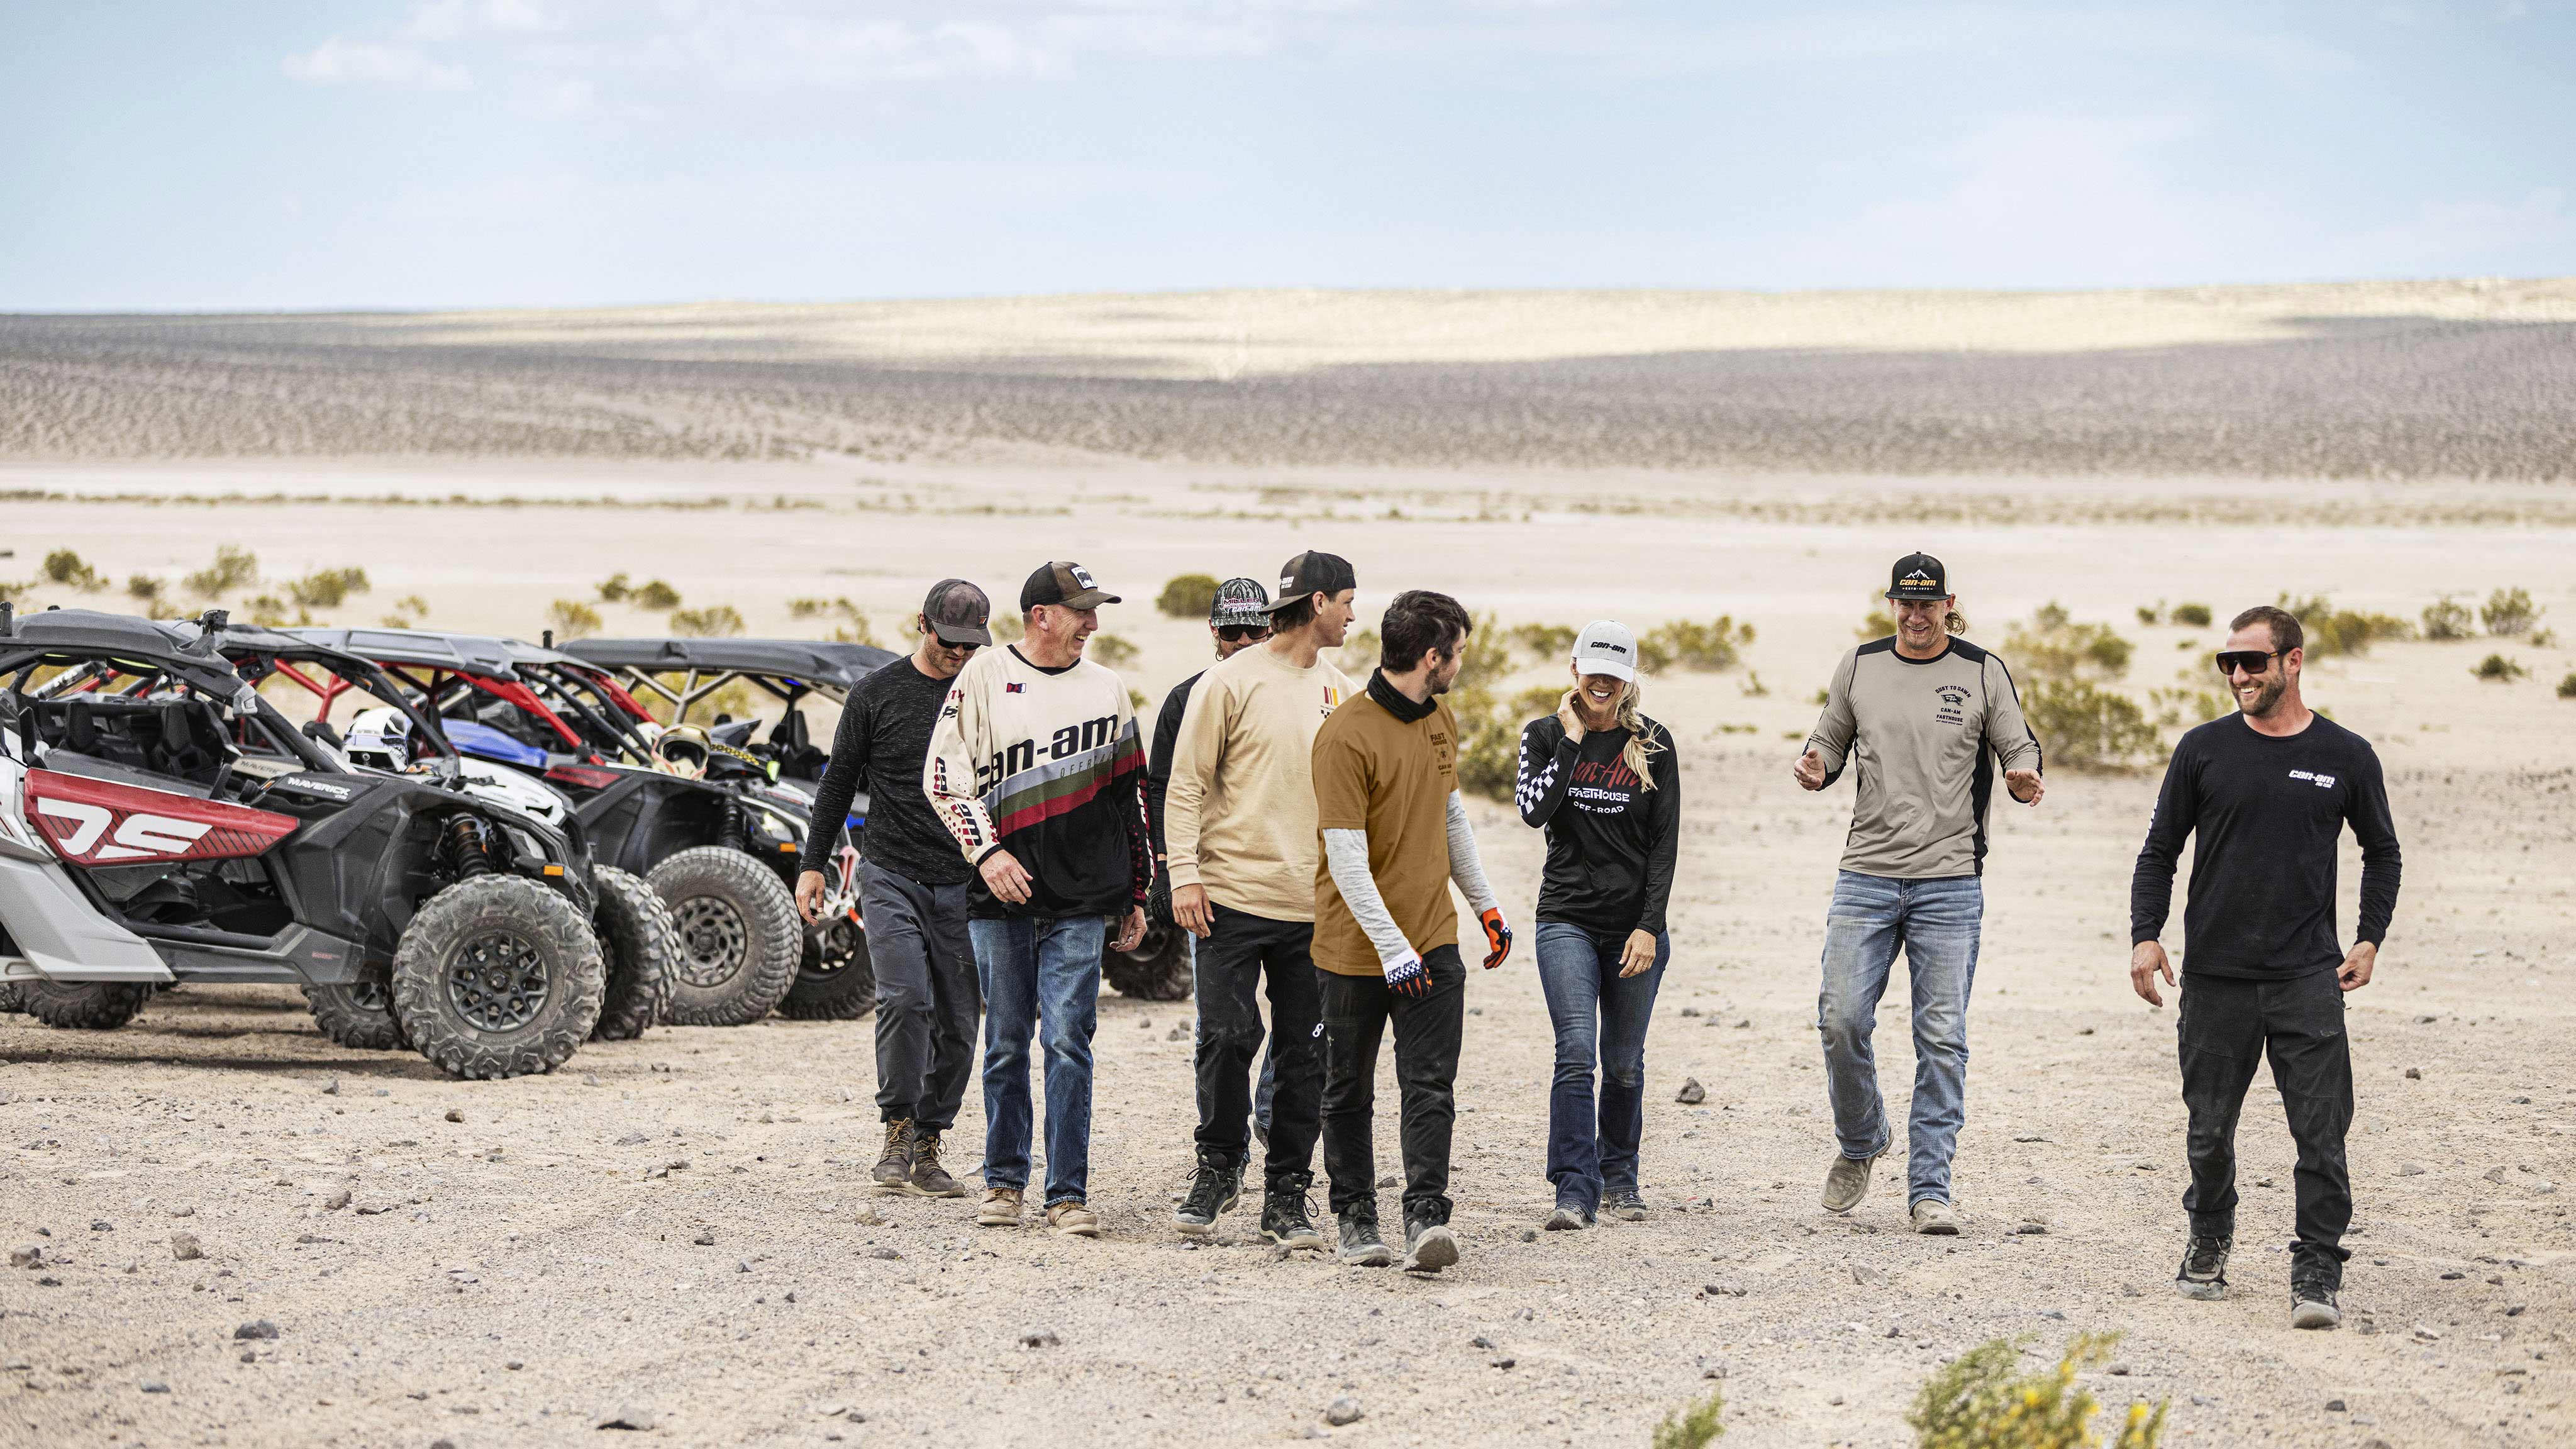 Acht rijders lopen vooruit in de woestijn, met drie Can-Am Maverick voertuigen op de achtergrond